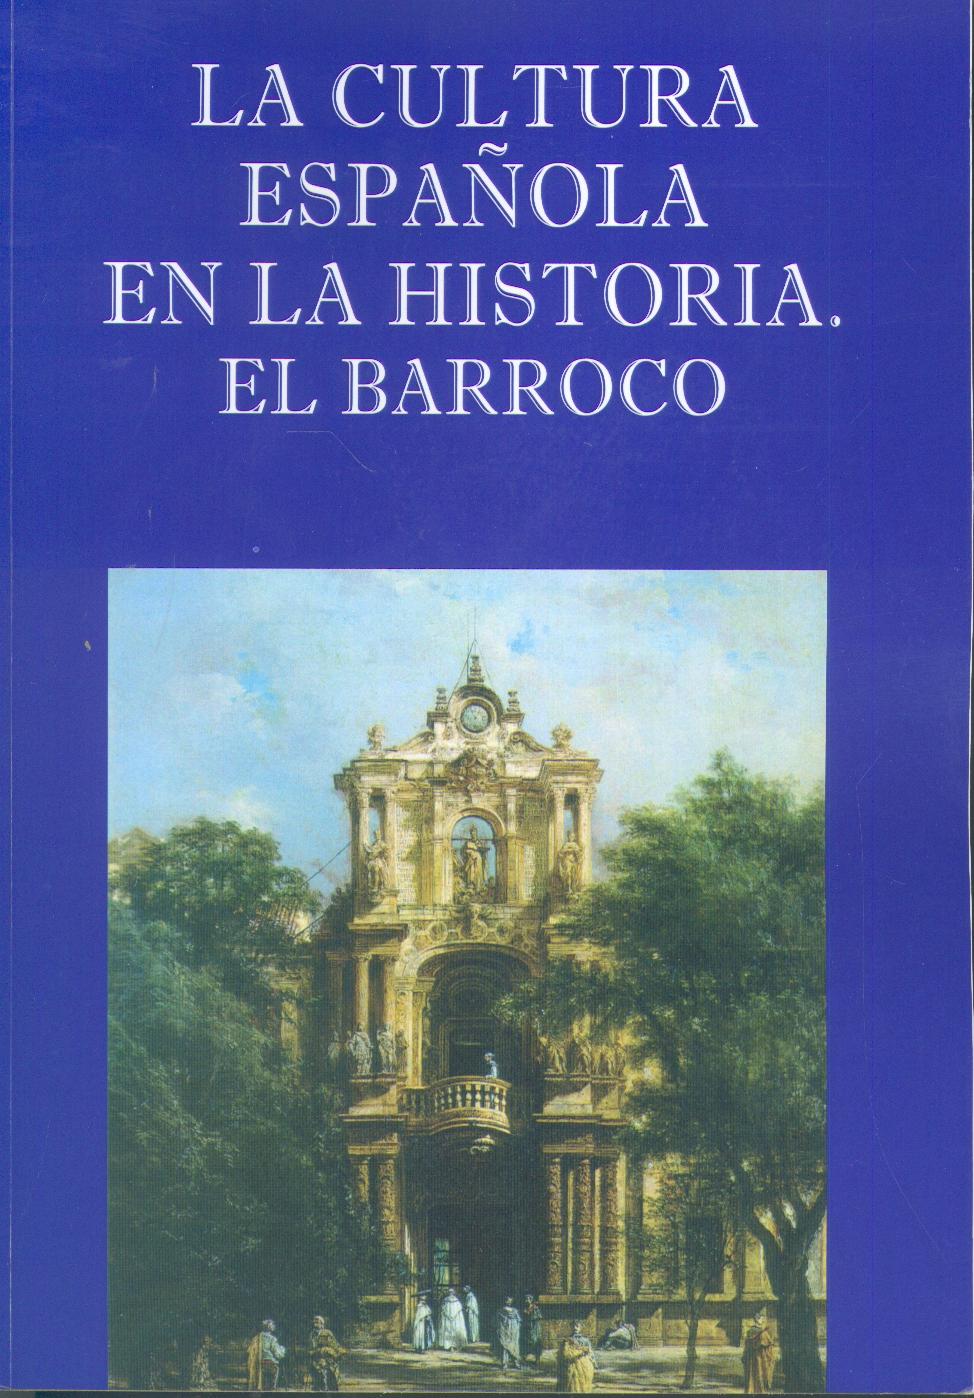 La Cultura Española en la Historia. el Barroco